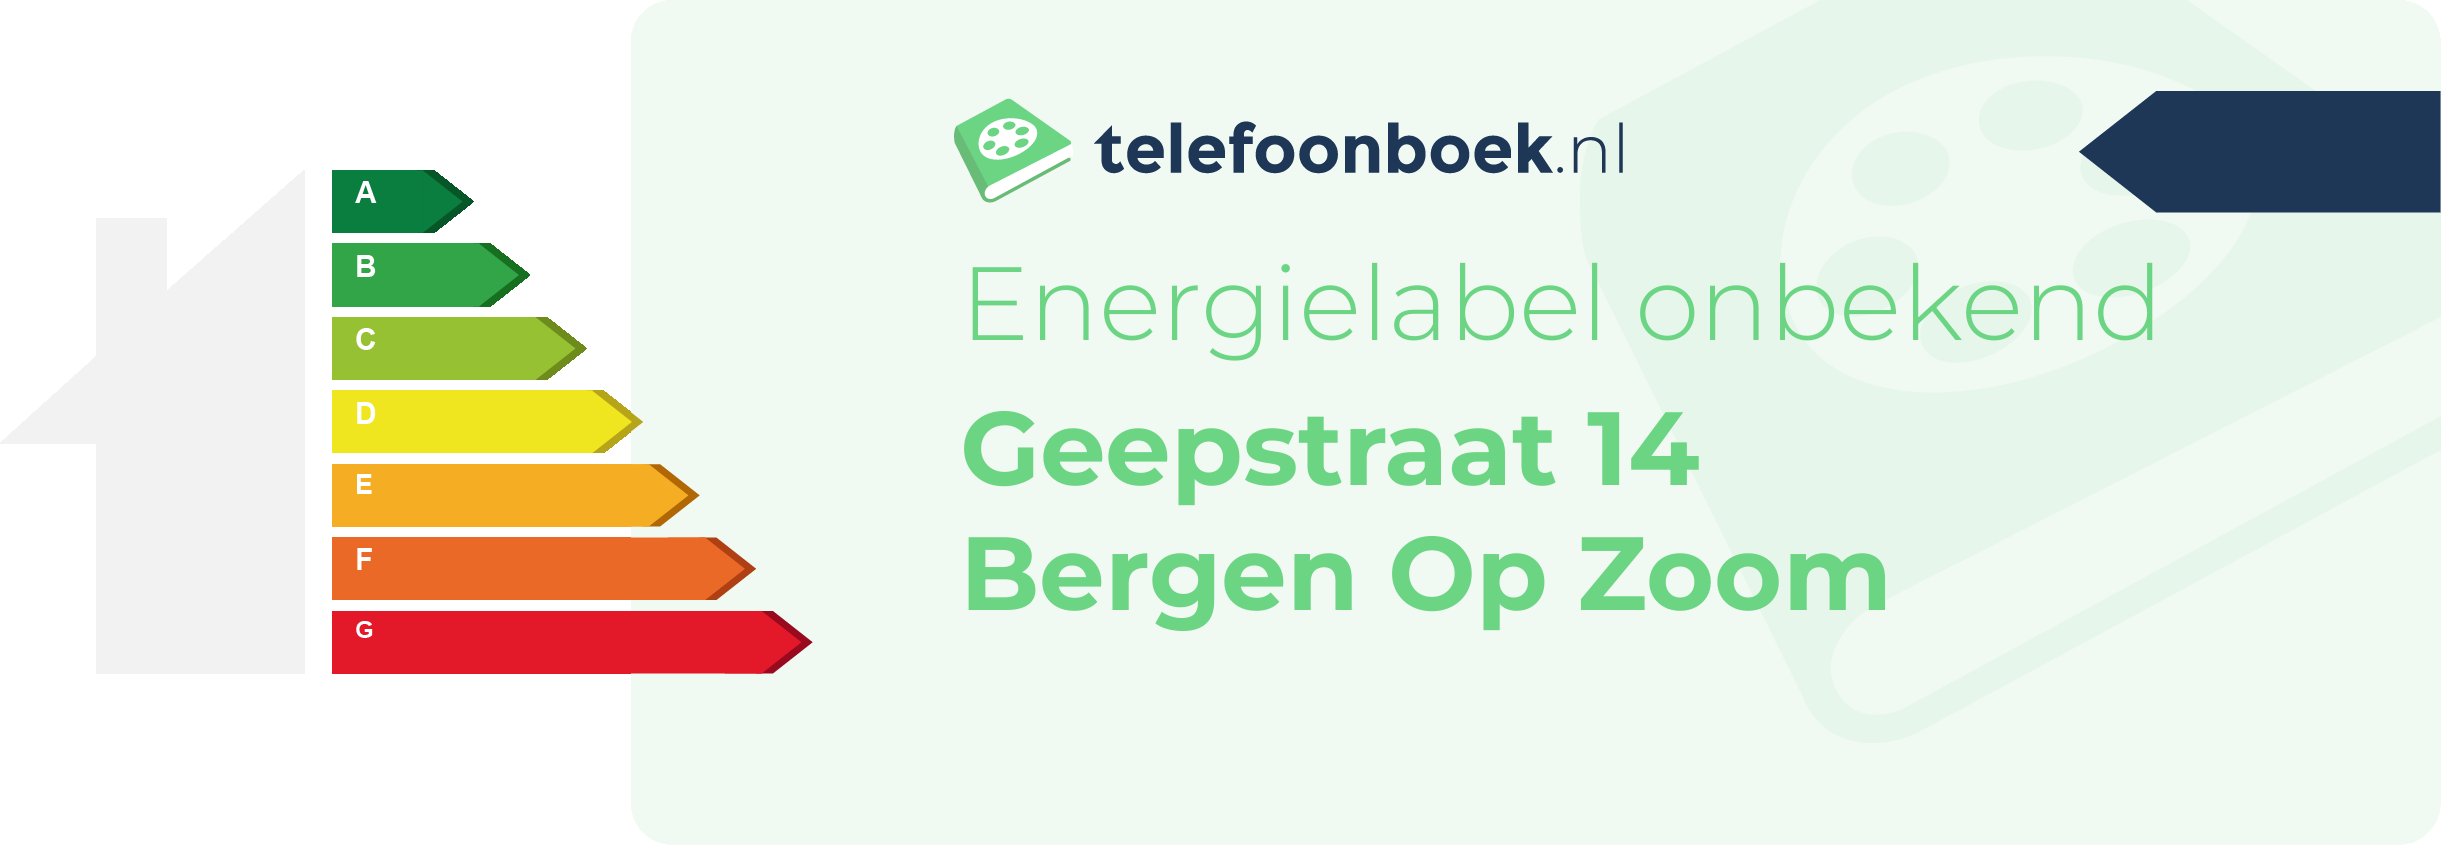 Energielabel Geepstraat 14 Bergen Op Zoom